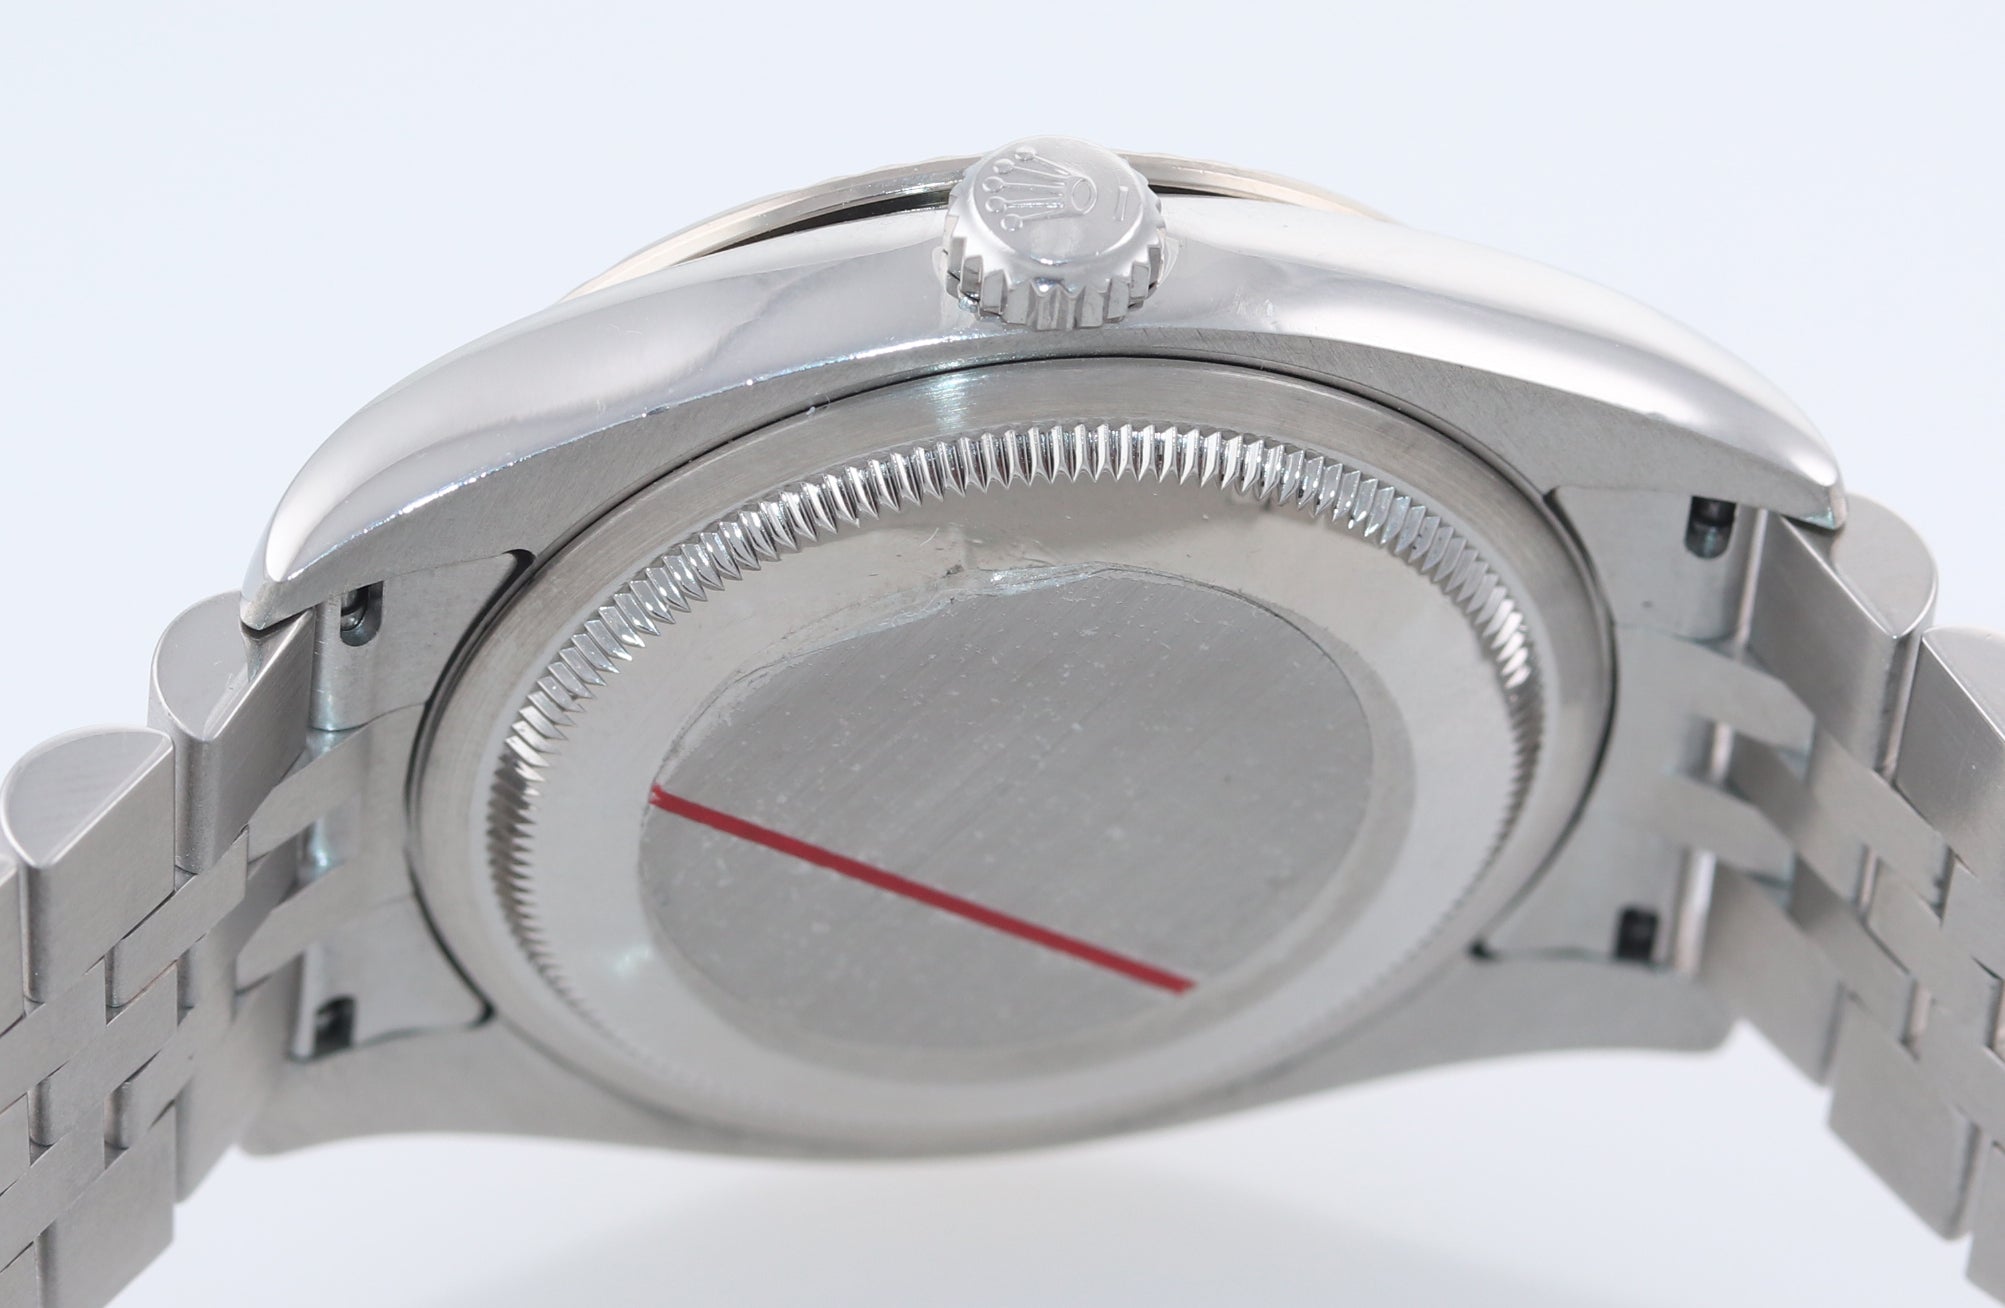 2005 Rolex DateJust 116264 Turn-O-Graph White T Bird Steel Jubilee 18k Watch